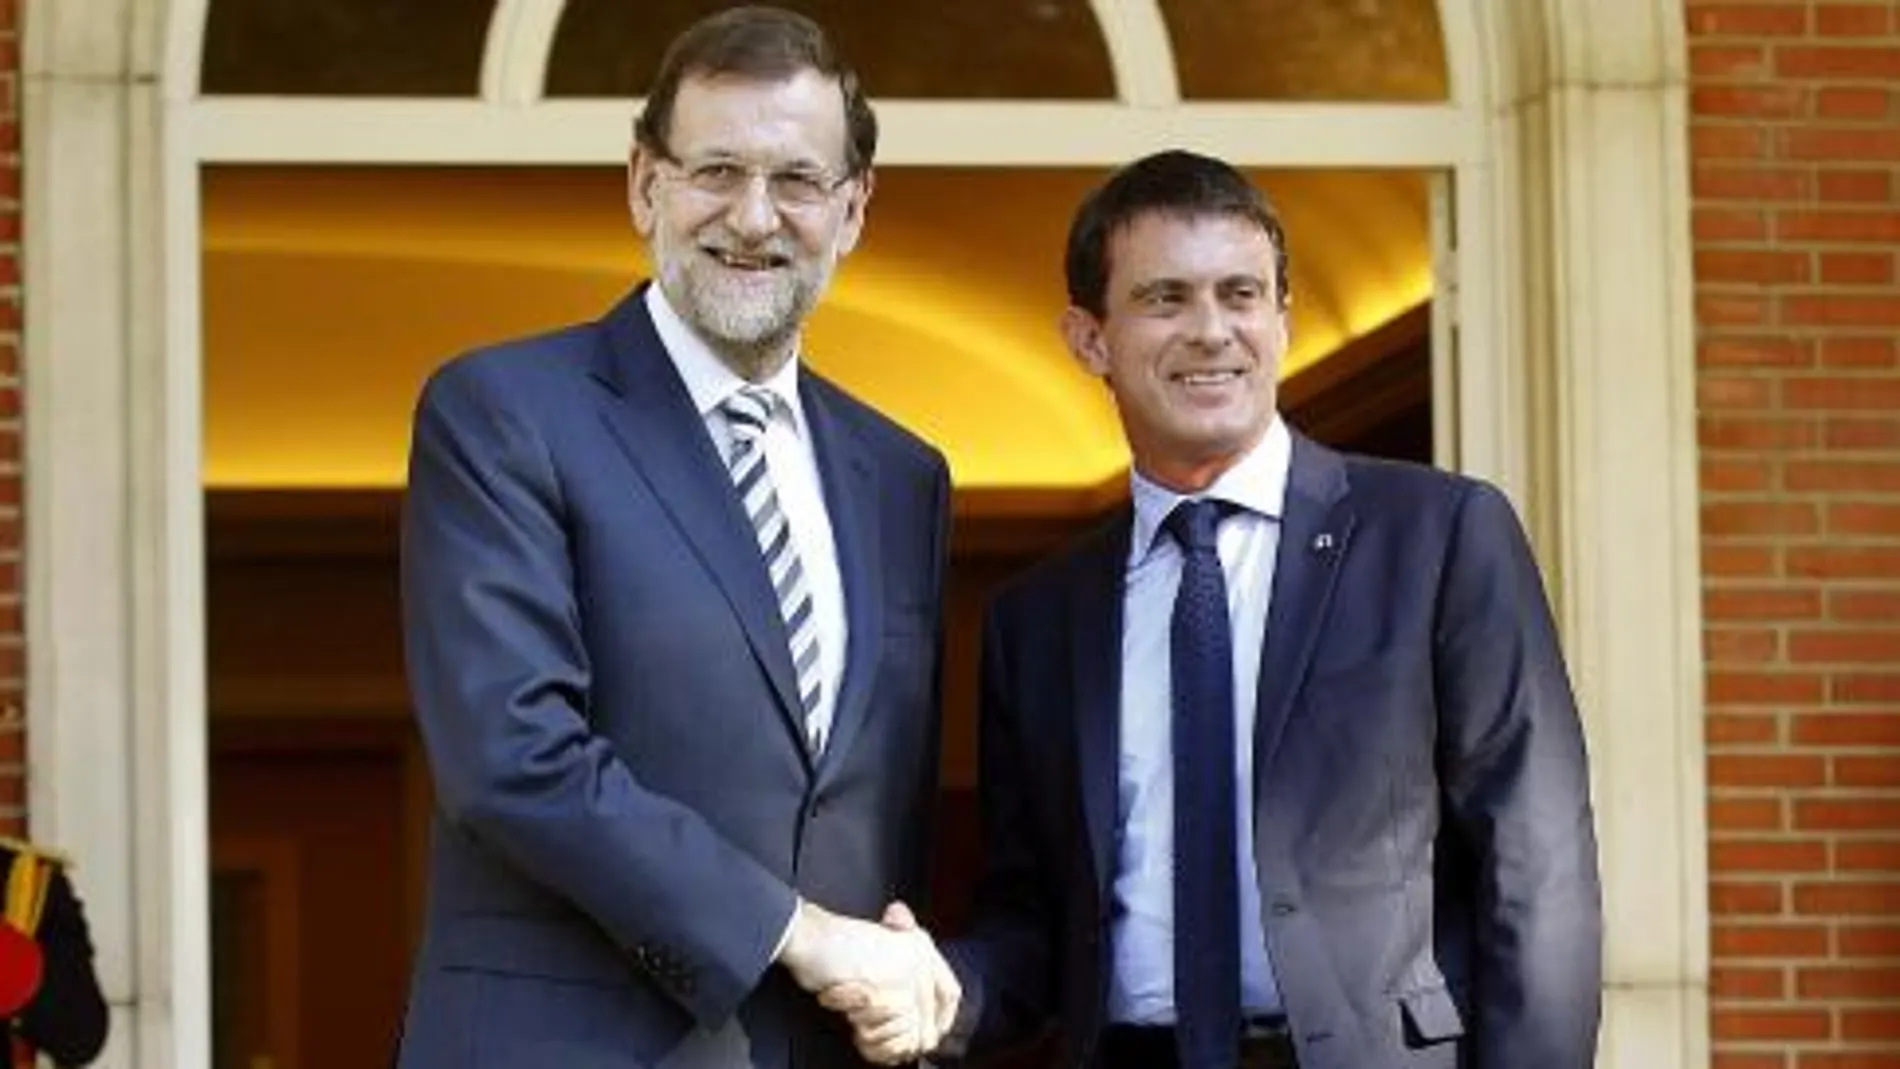 El presidente del Gobierno, Mariano Rajoy , recibe al primer ministro francés, Manuel Valls, a su llegada esta tarde a la reunión que mantendrán en el Palacio de la Moncloa, en Madrid.